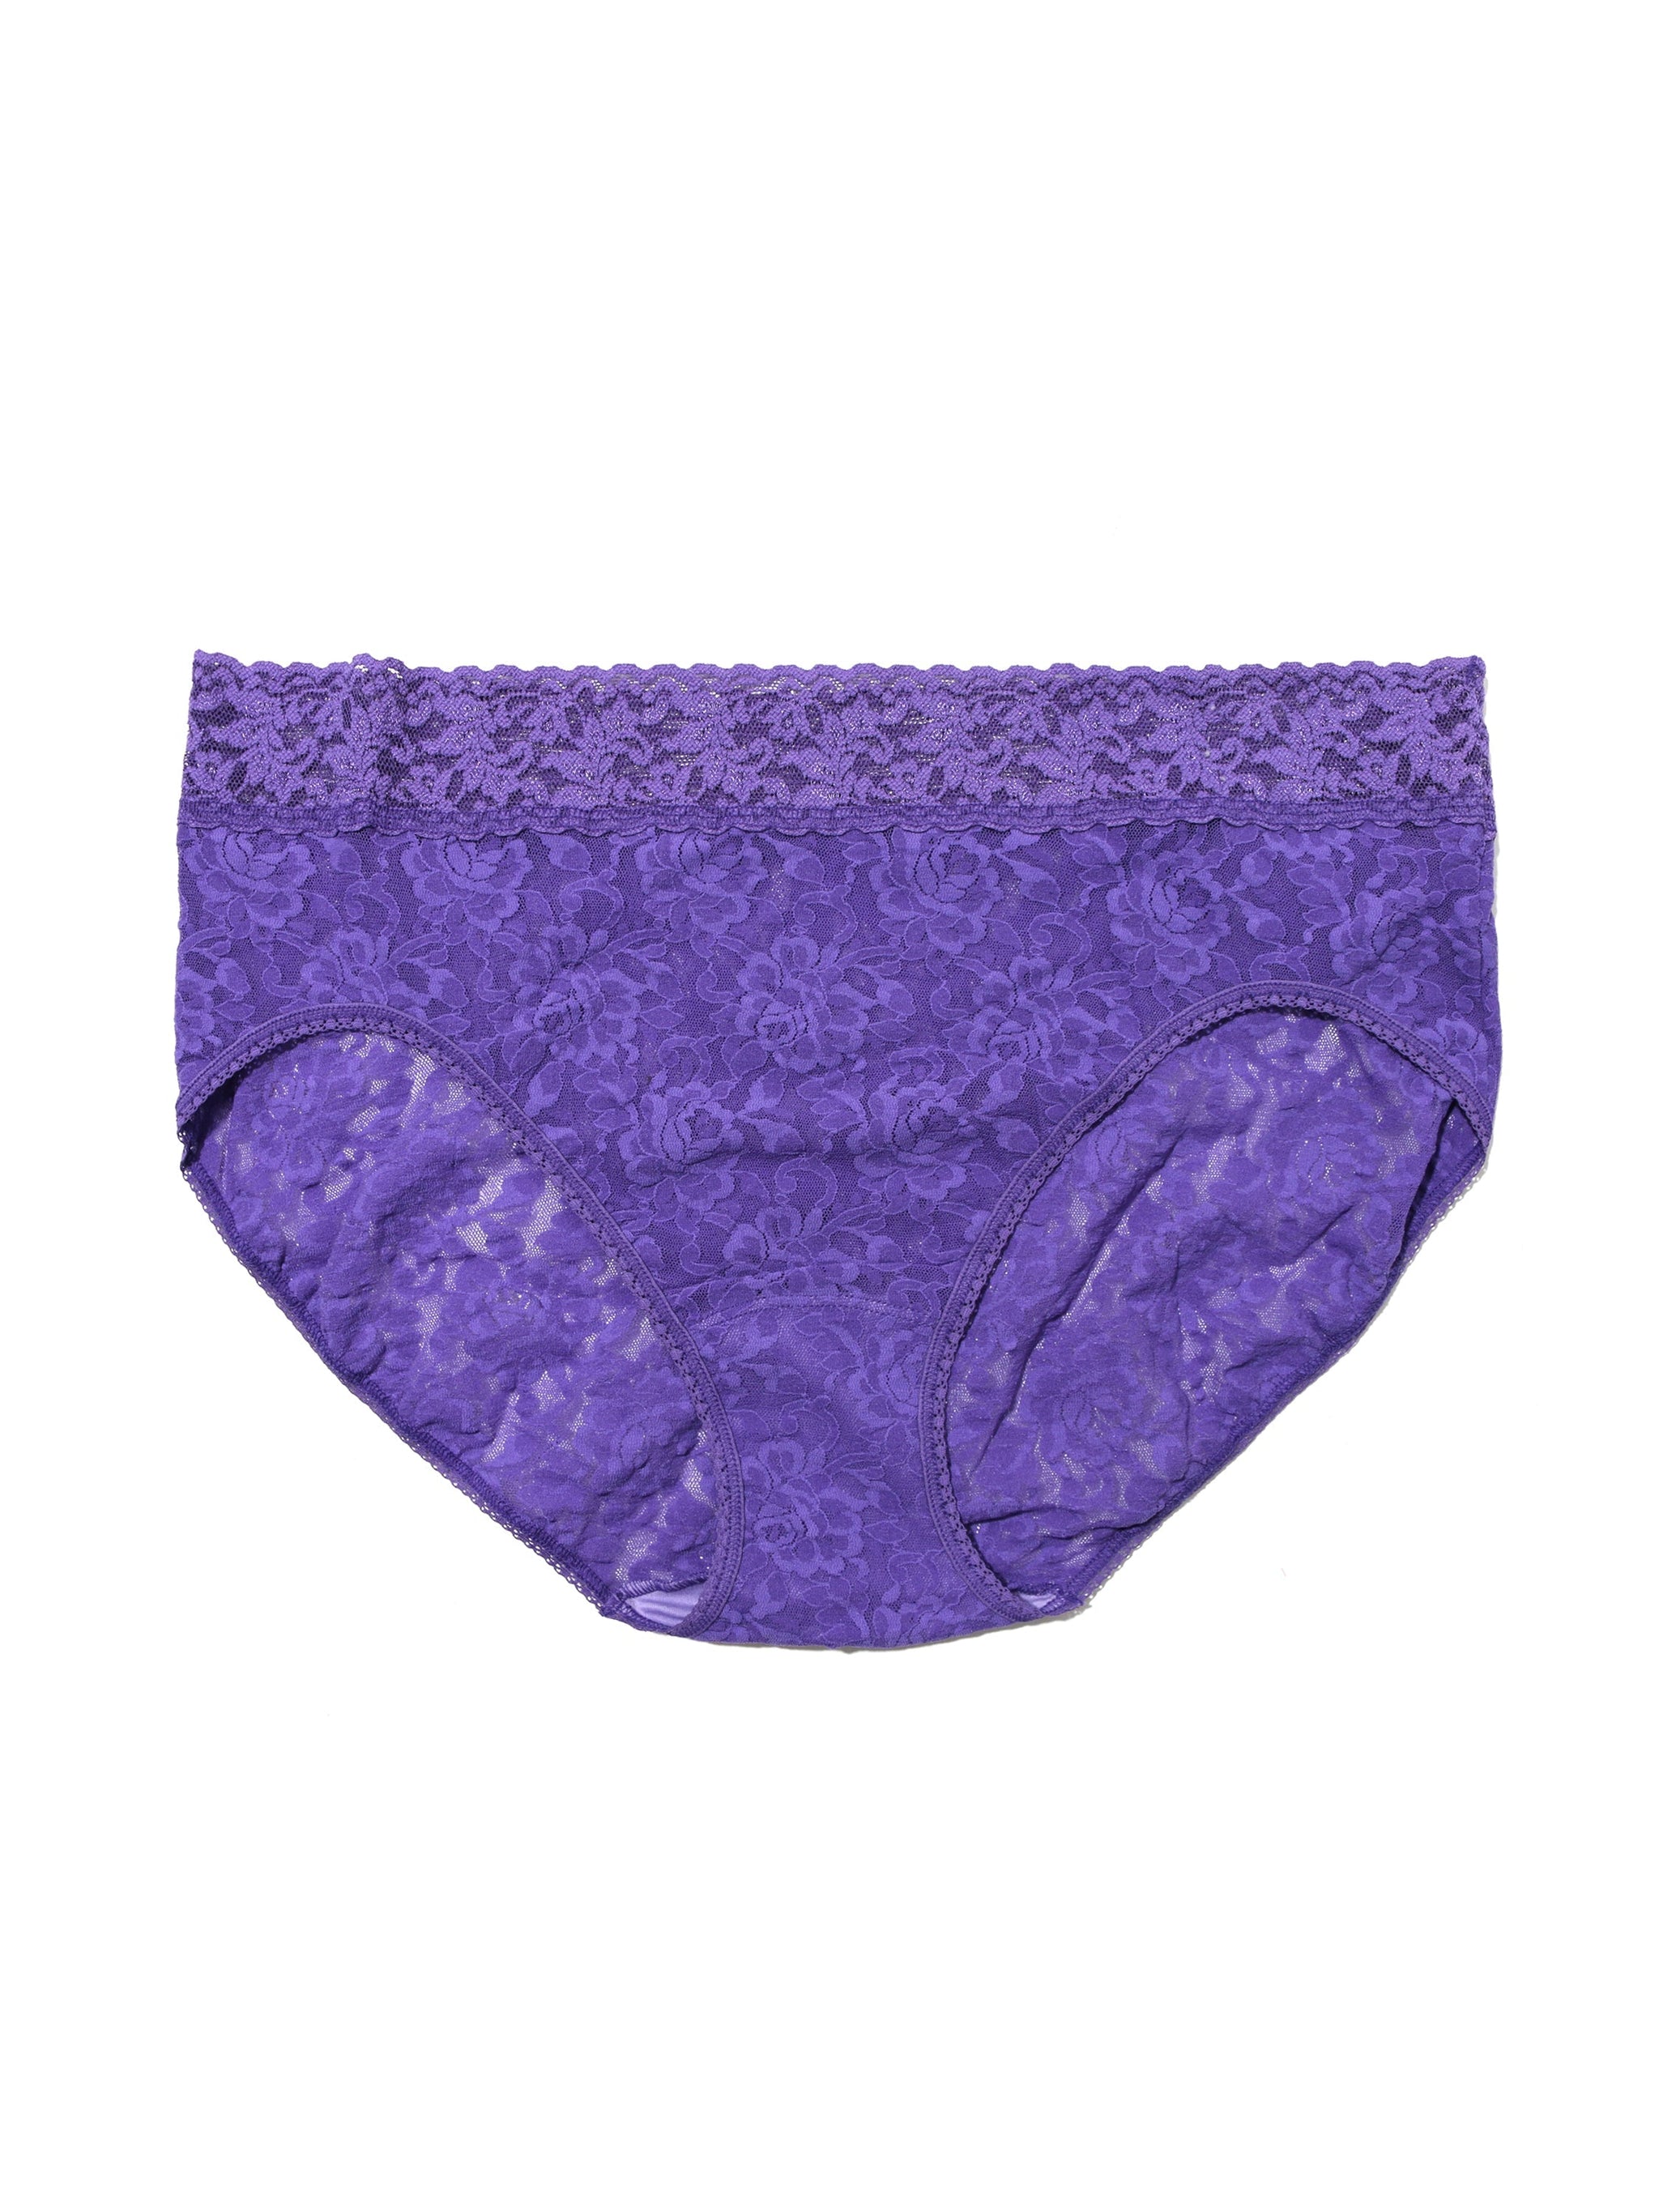 Plus Size Signature Lace French Brief Wild Violet Purple Sale